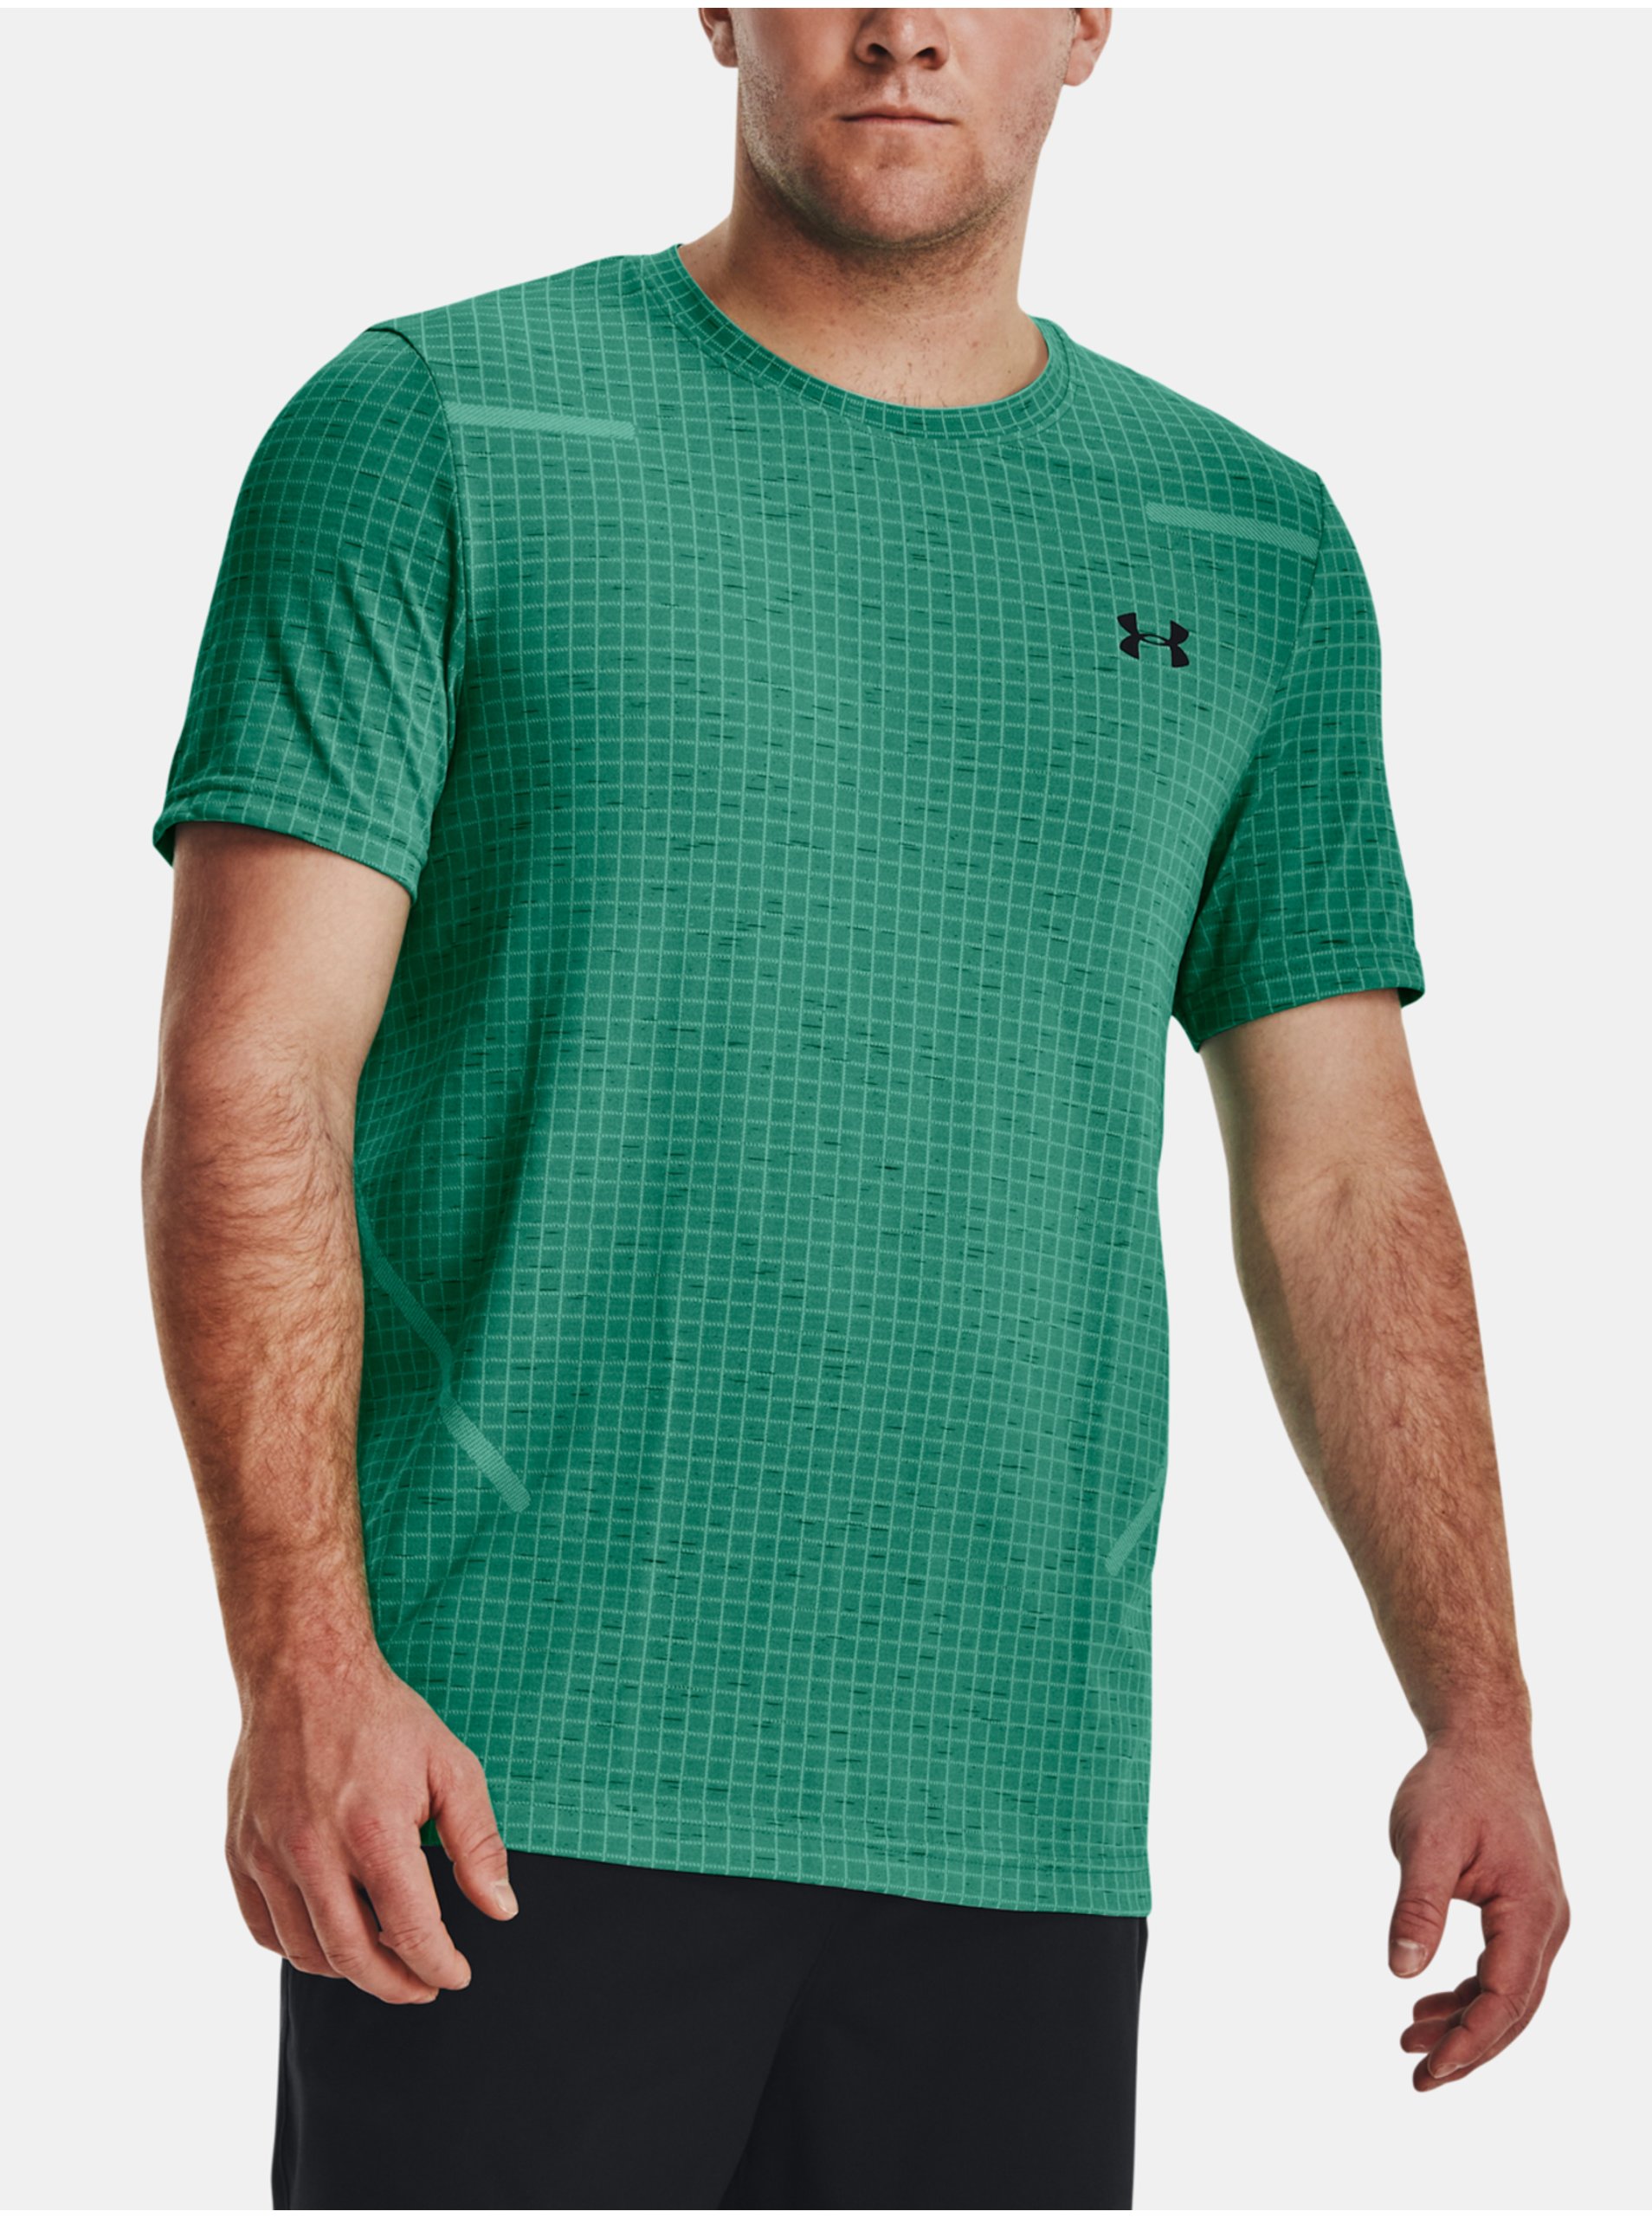 Lacno Zelené športové tričko Under Armour UA Seamless Grid